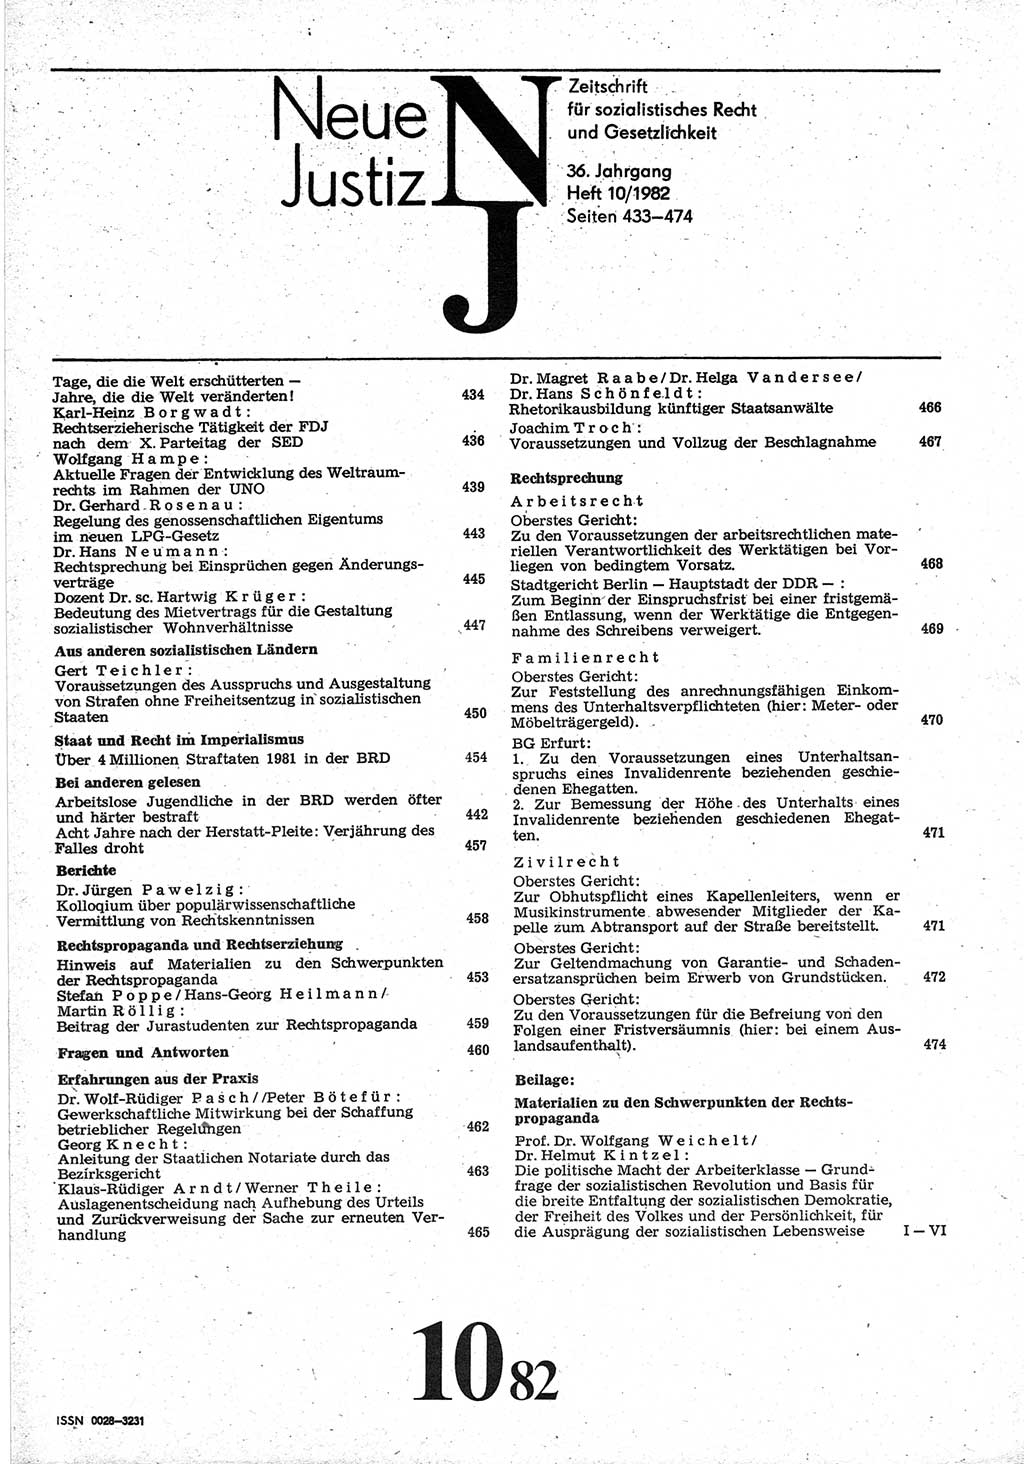 Neue Justiz (NJ), Zeitschrift für sozialistisches Recht und Gesetzlichkeit [Deutsche Demokratische Republik (DDR)], 36. Jahrgang 1982, Seite 433 (NJ DDR 1982, S. 433)